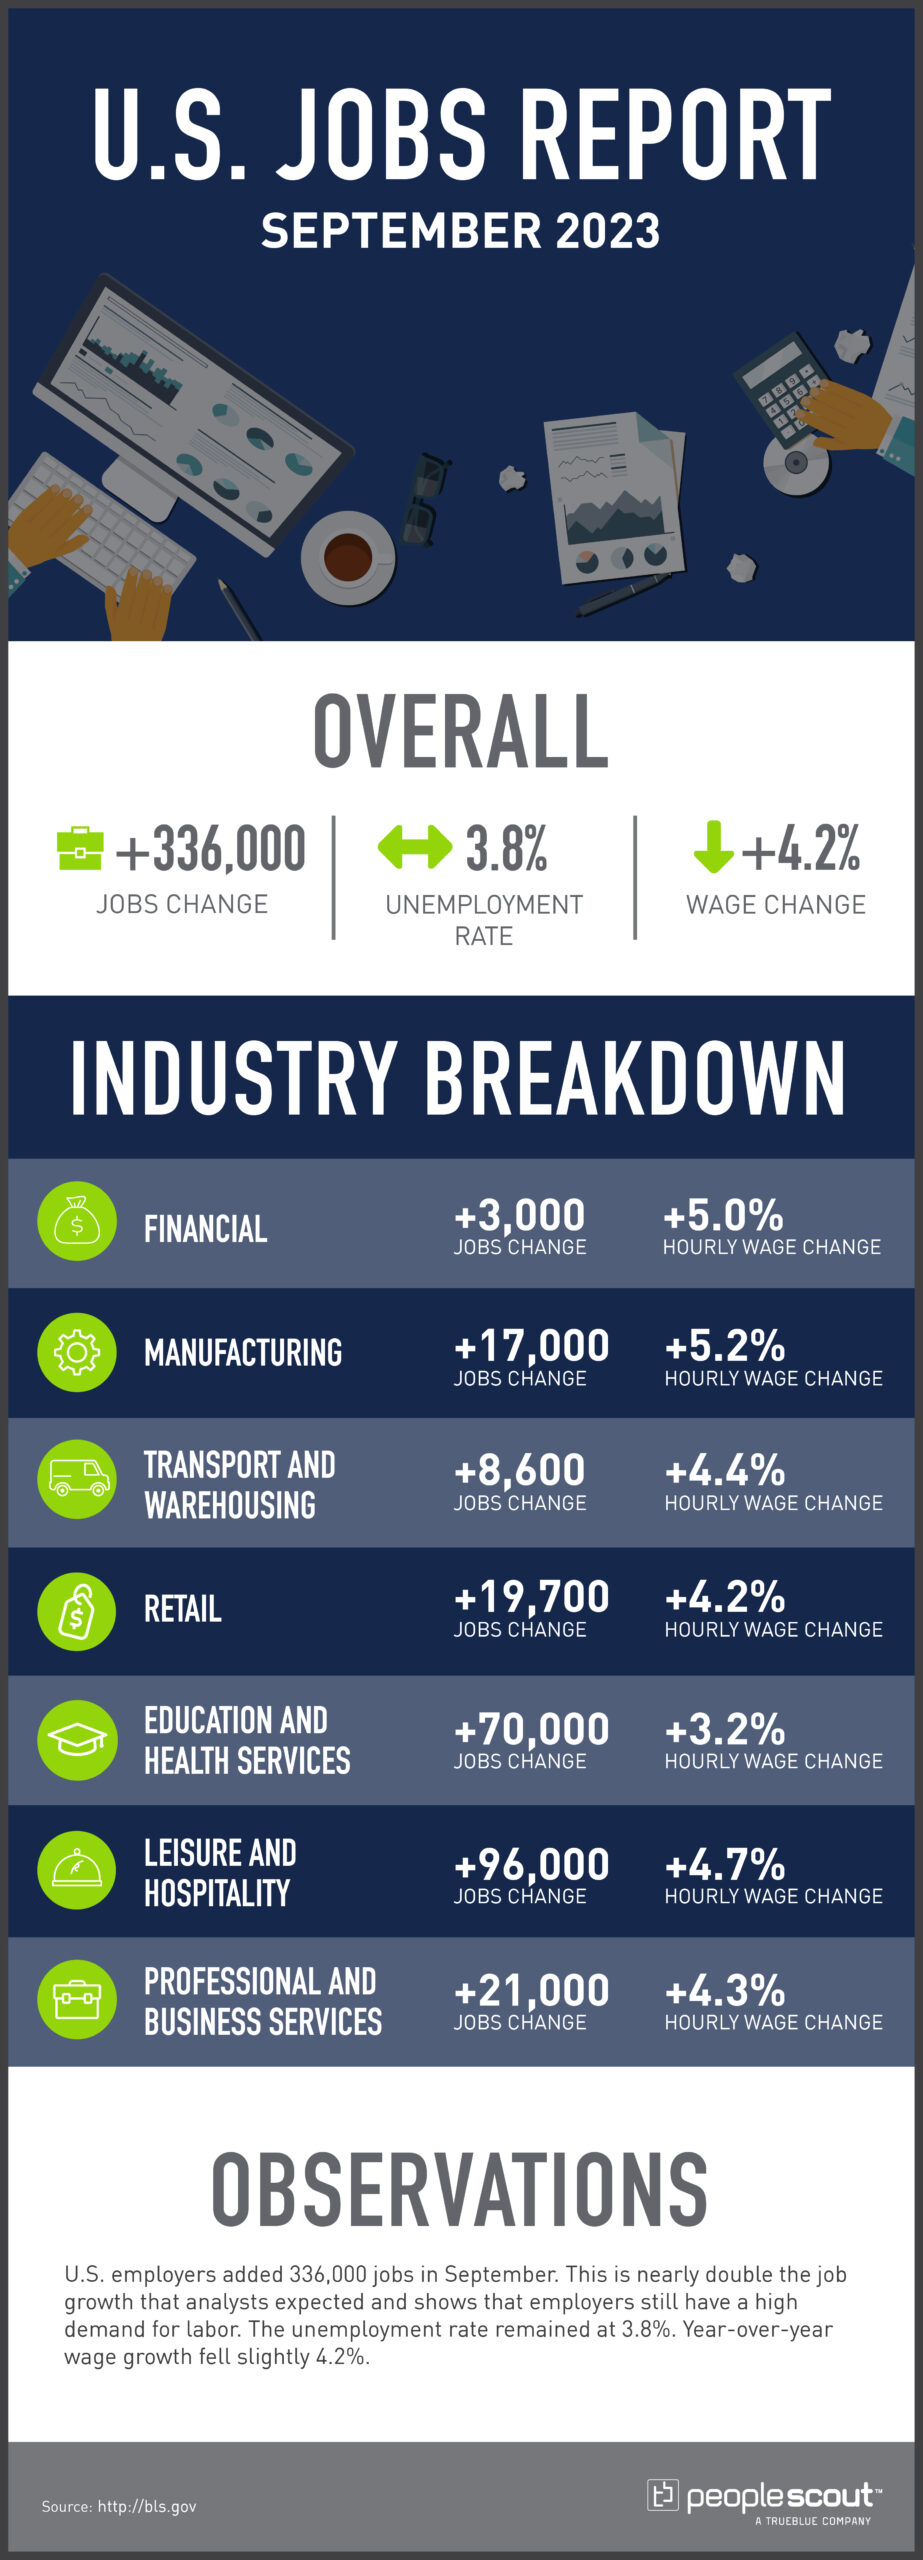 u.s. jobs report september 2023 infographic